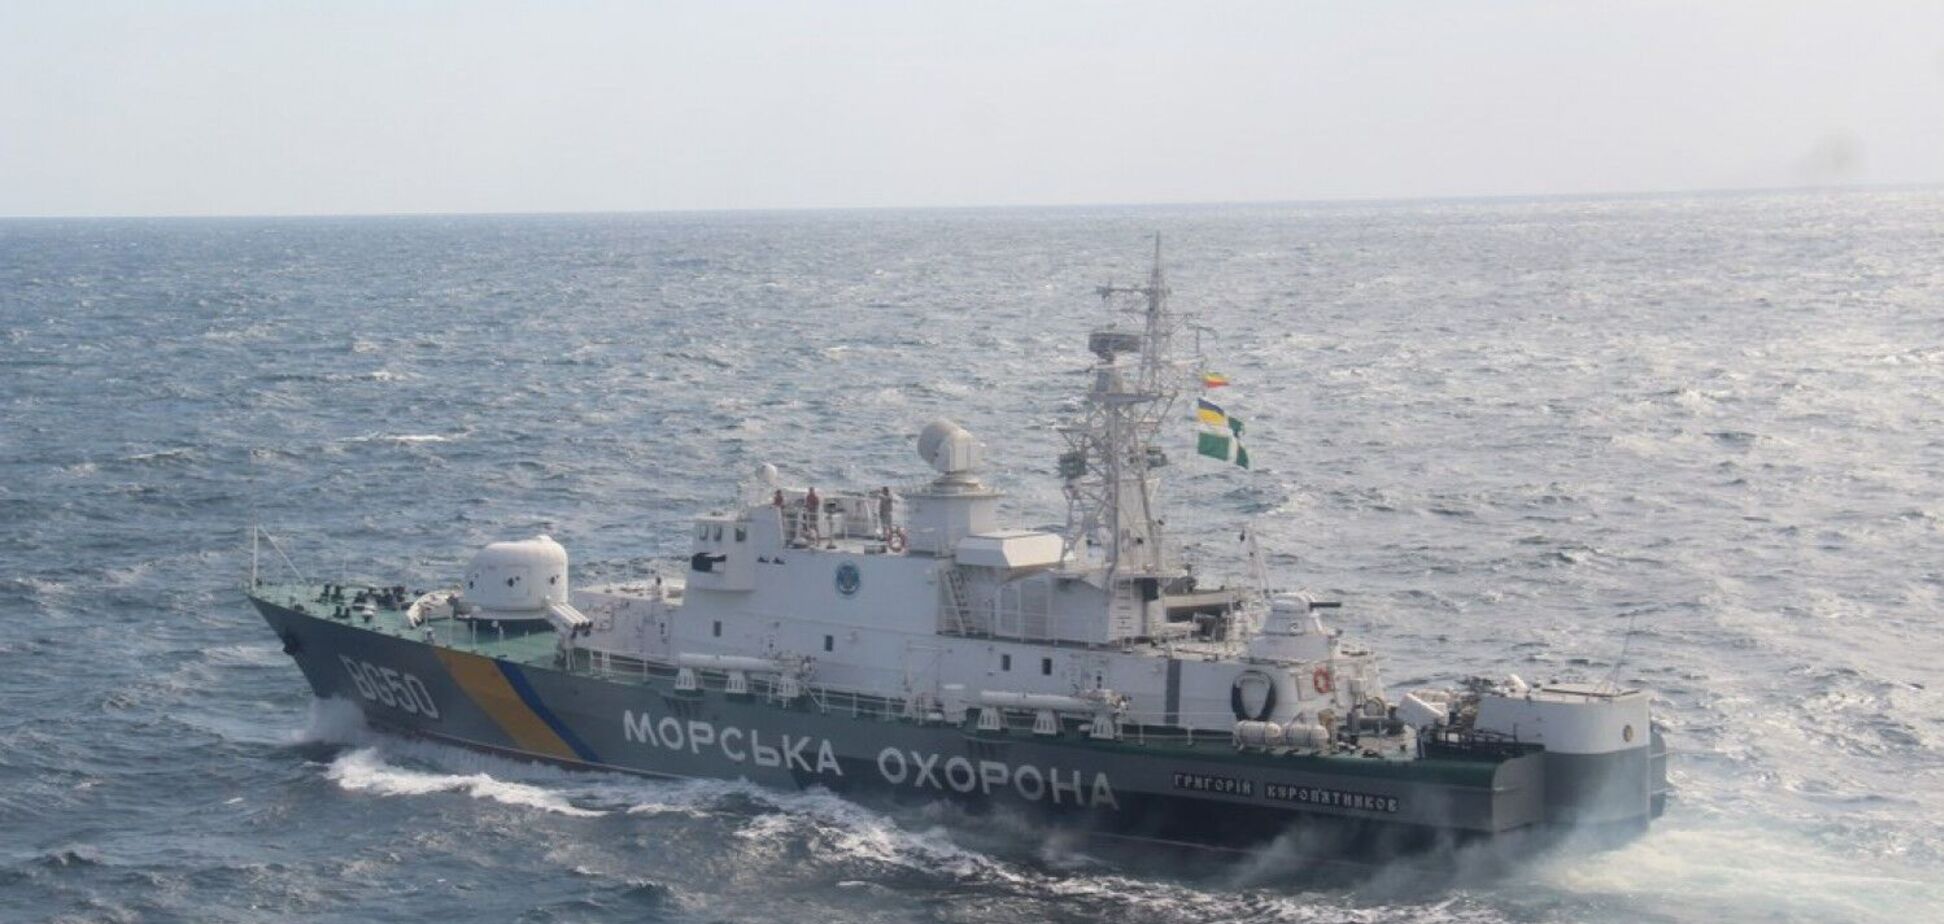 Дрон противника атаковал украинский пограничний корабль, но был сбит